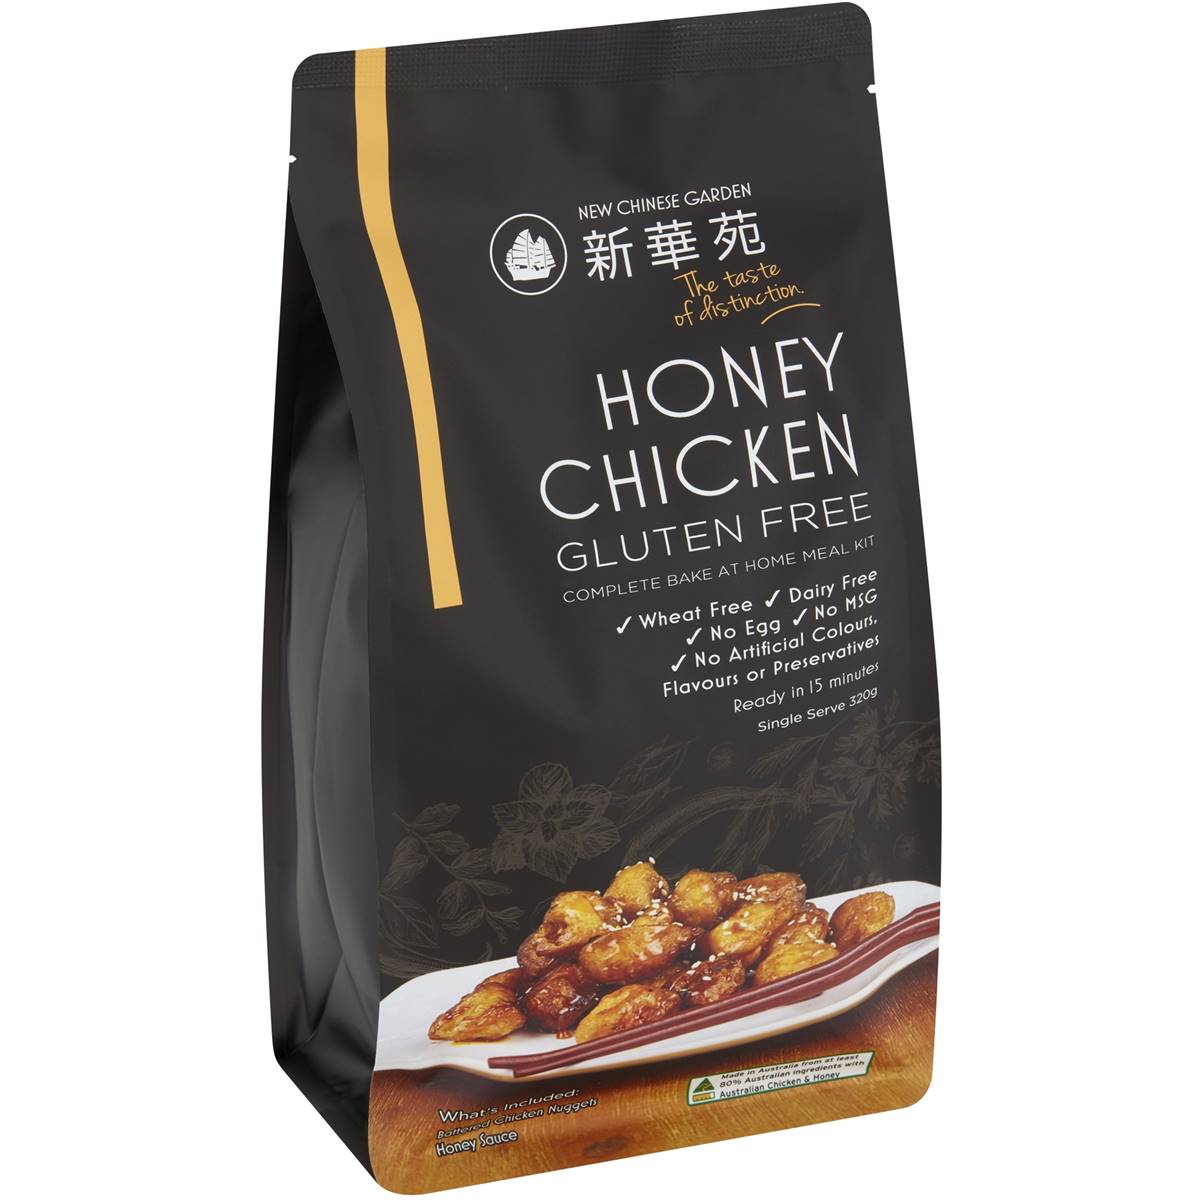 New Chinese Garden Honey Soy Chicken 320g GF